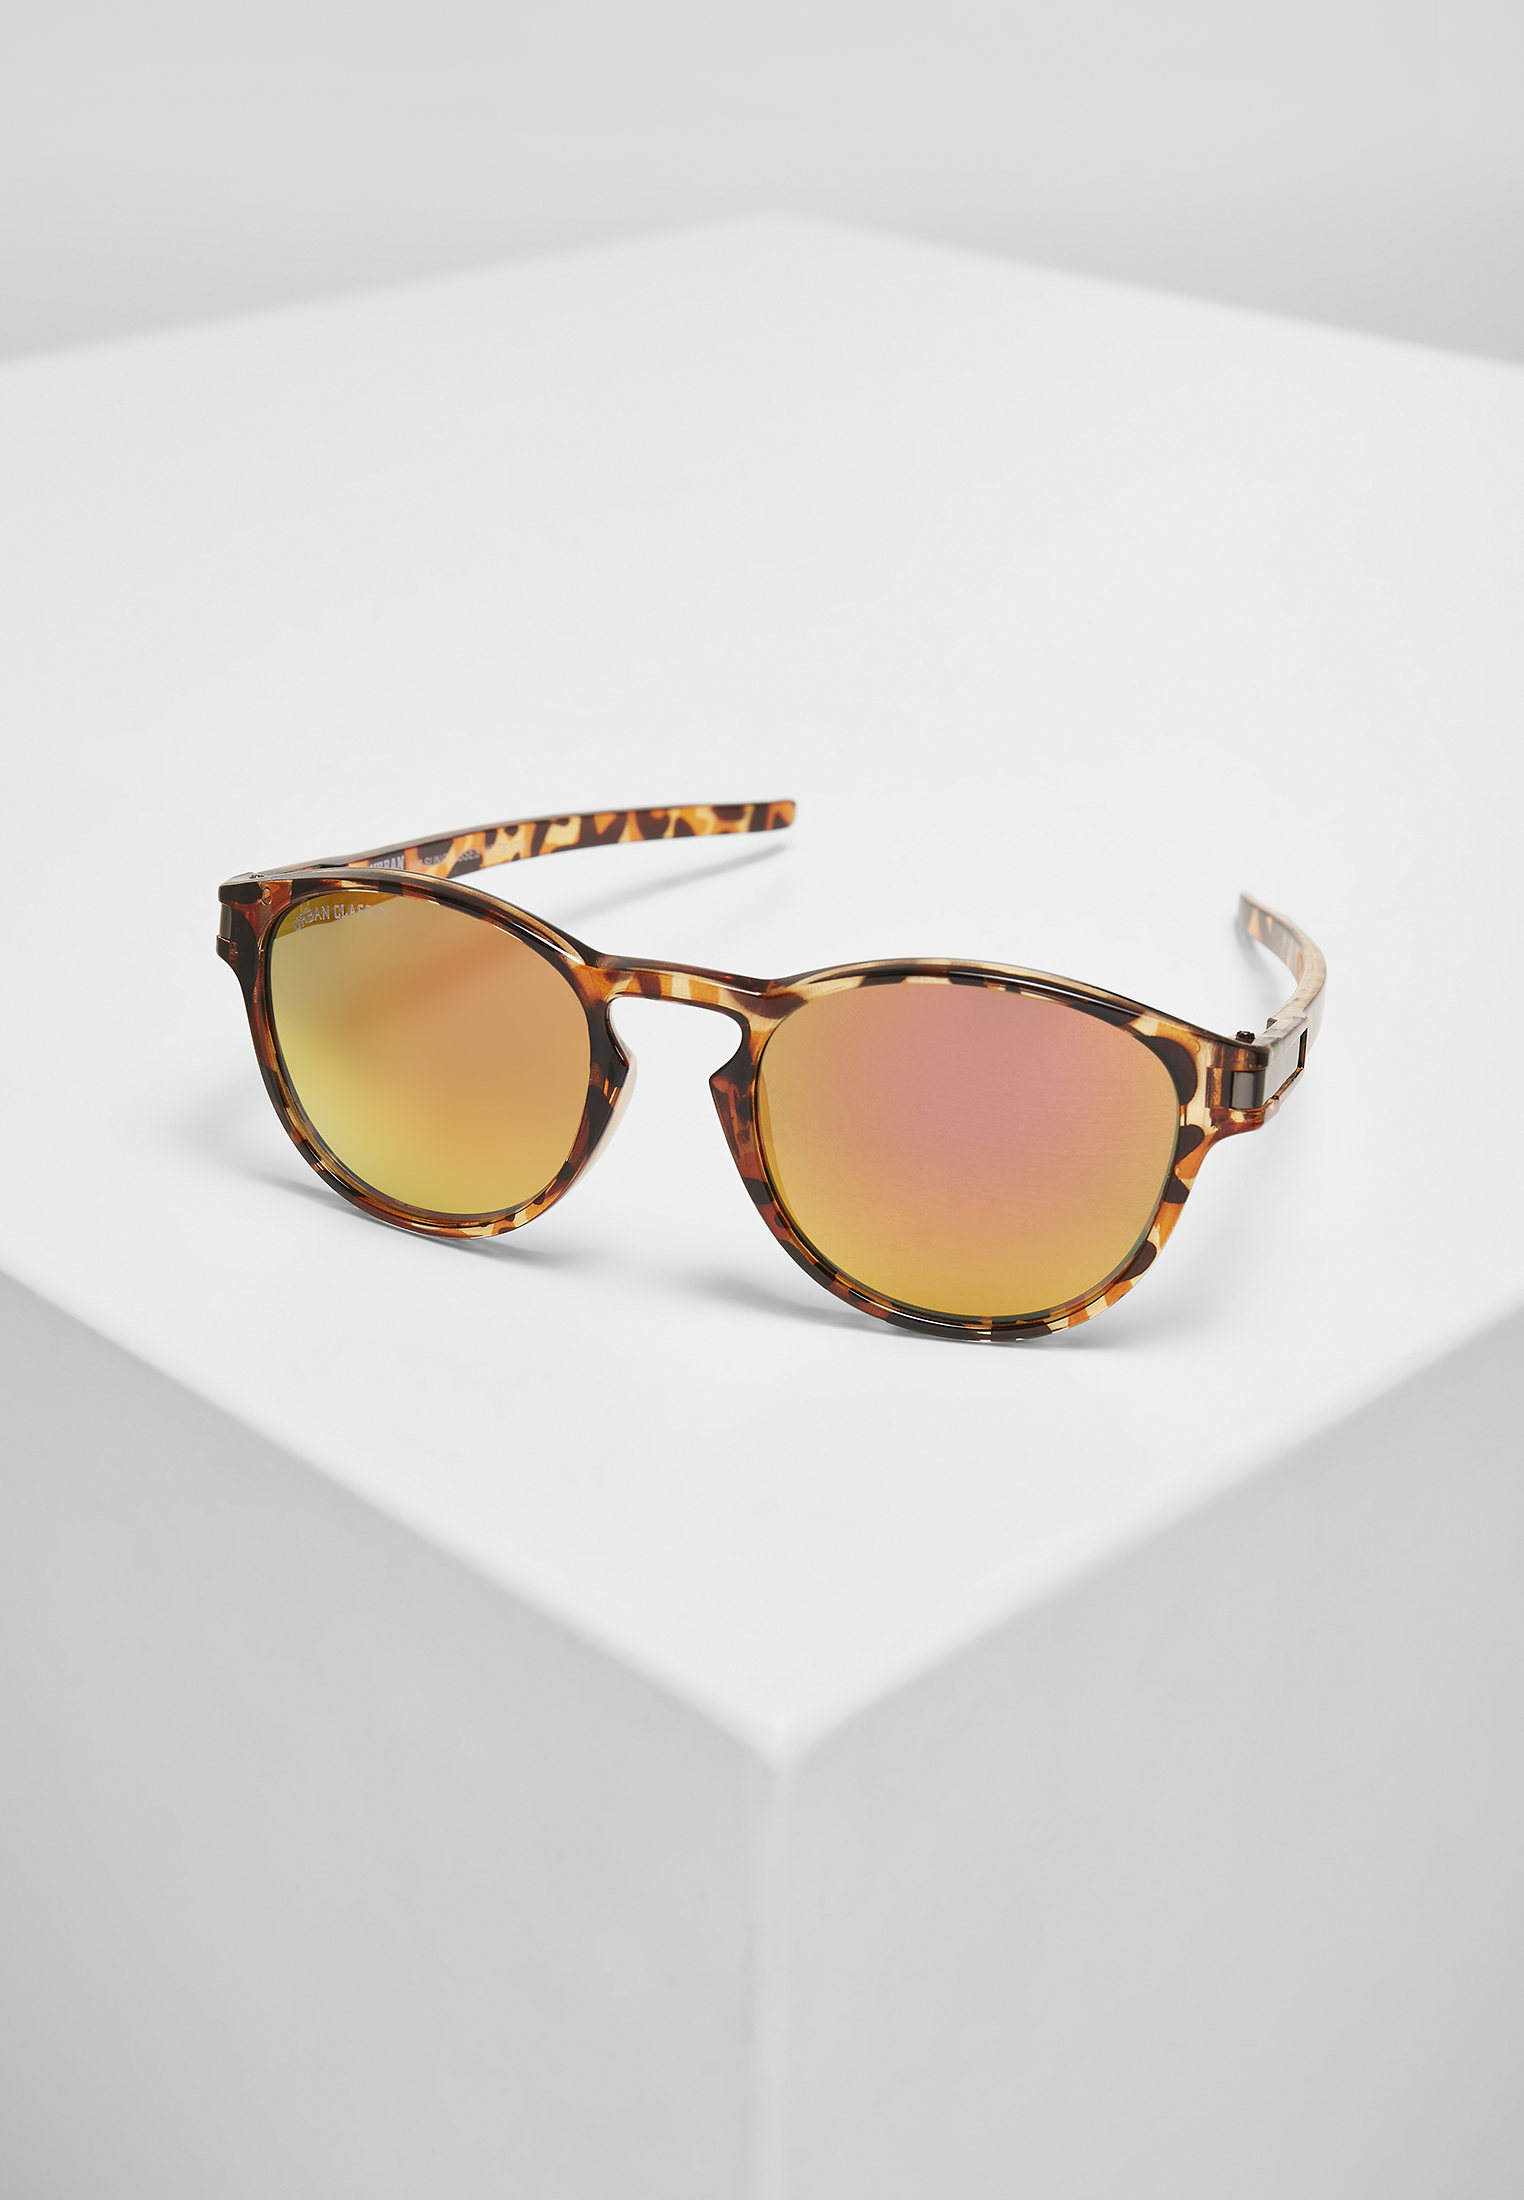 Sonnenbrillen 106 Sunglasses UC in Farbe brown leo/orange